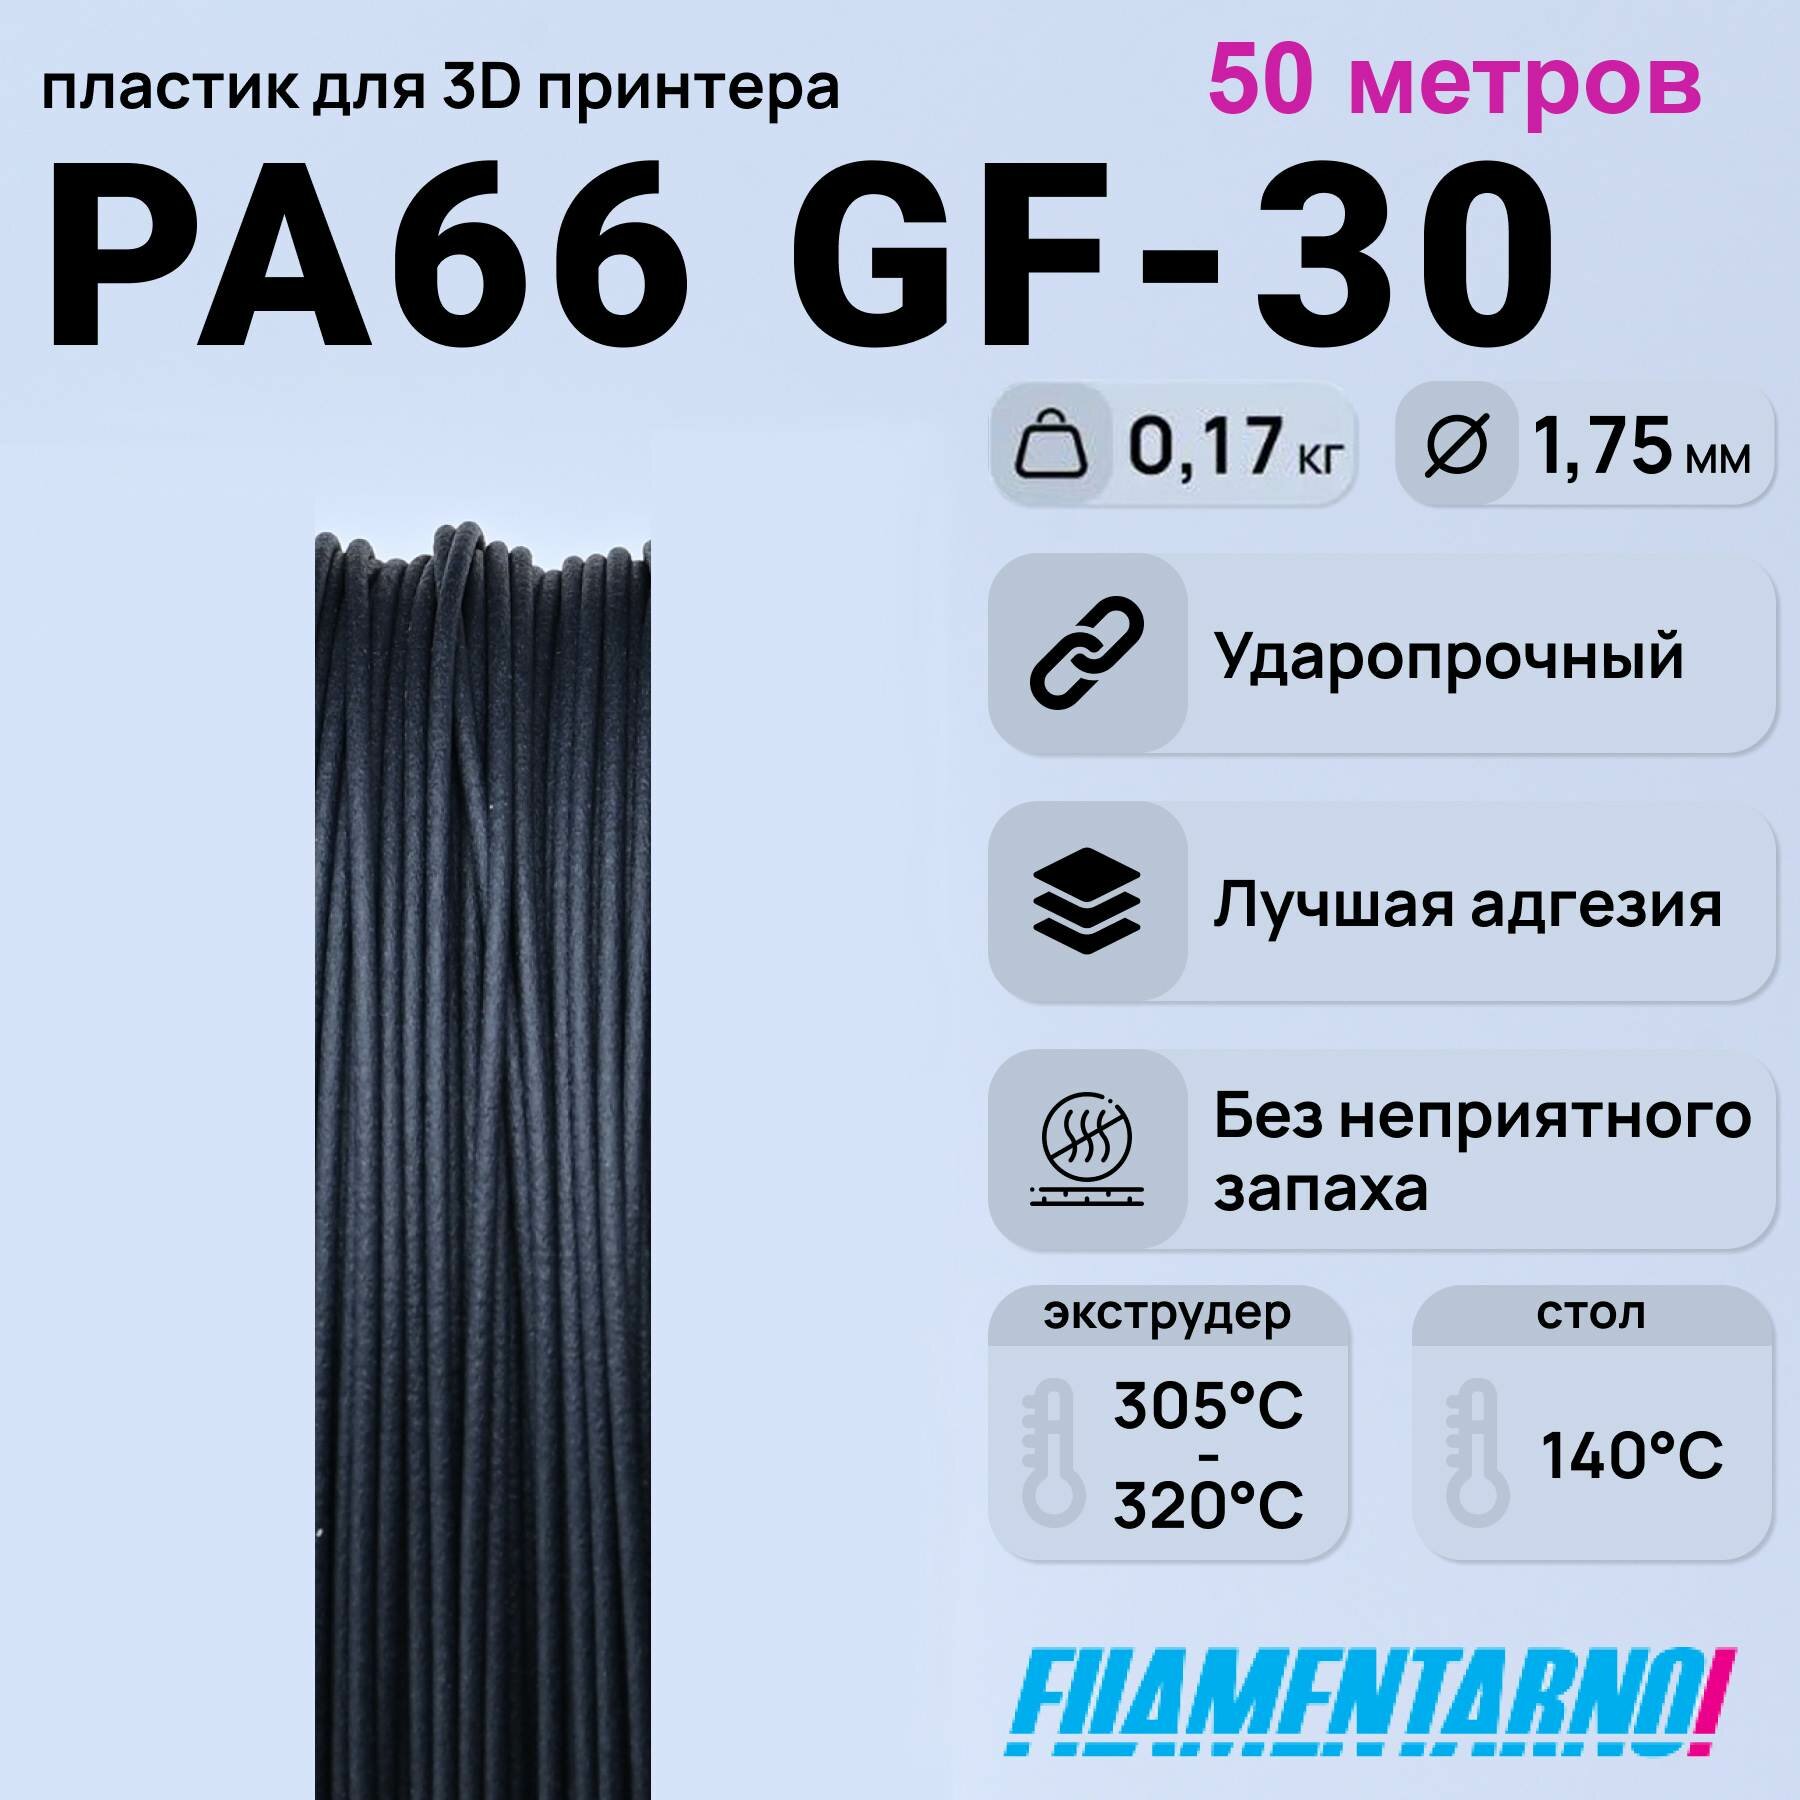 PA66 GF-30 черный 50 м, 200 г. 1,75 мм. , пластик Filamentarno для 3D-принтера